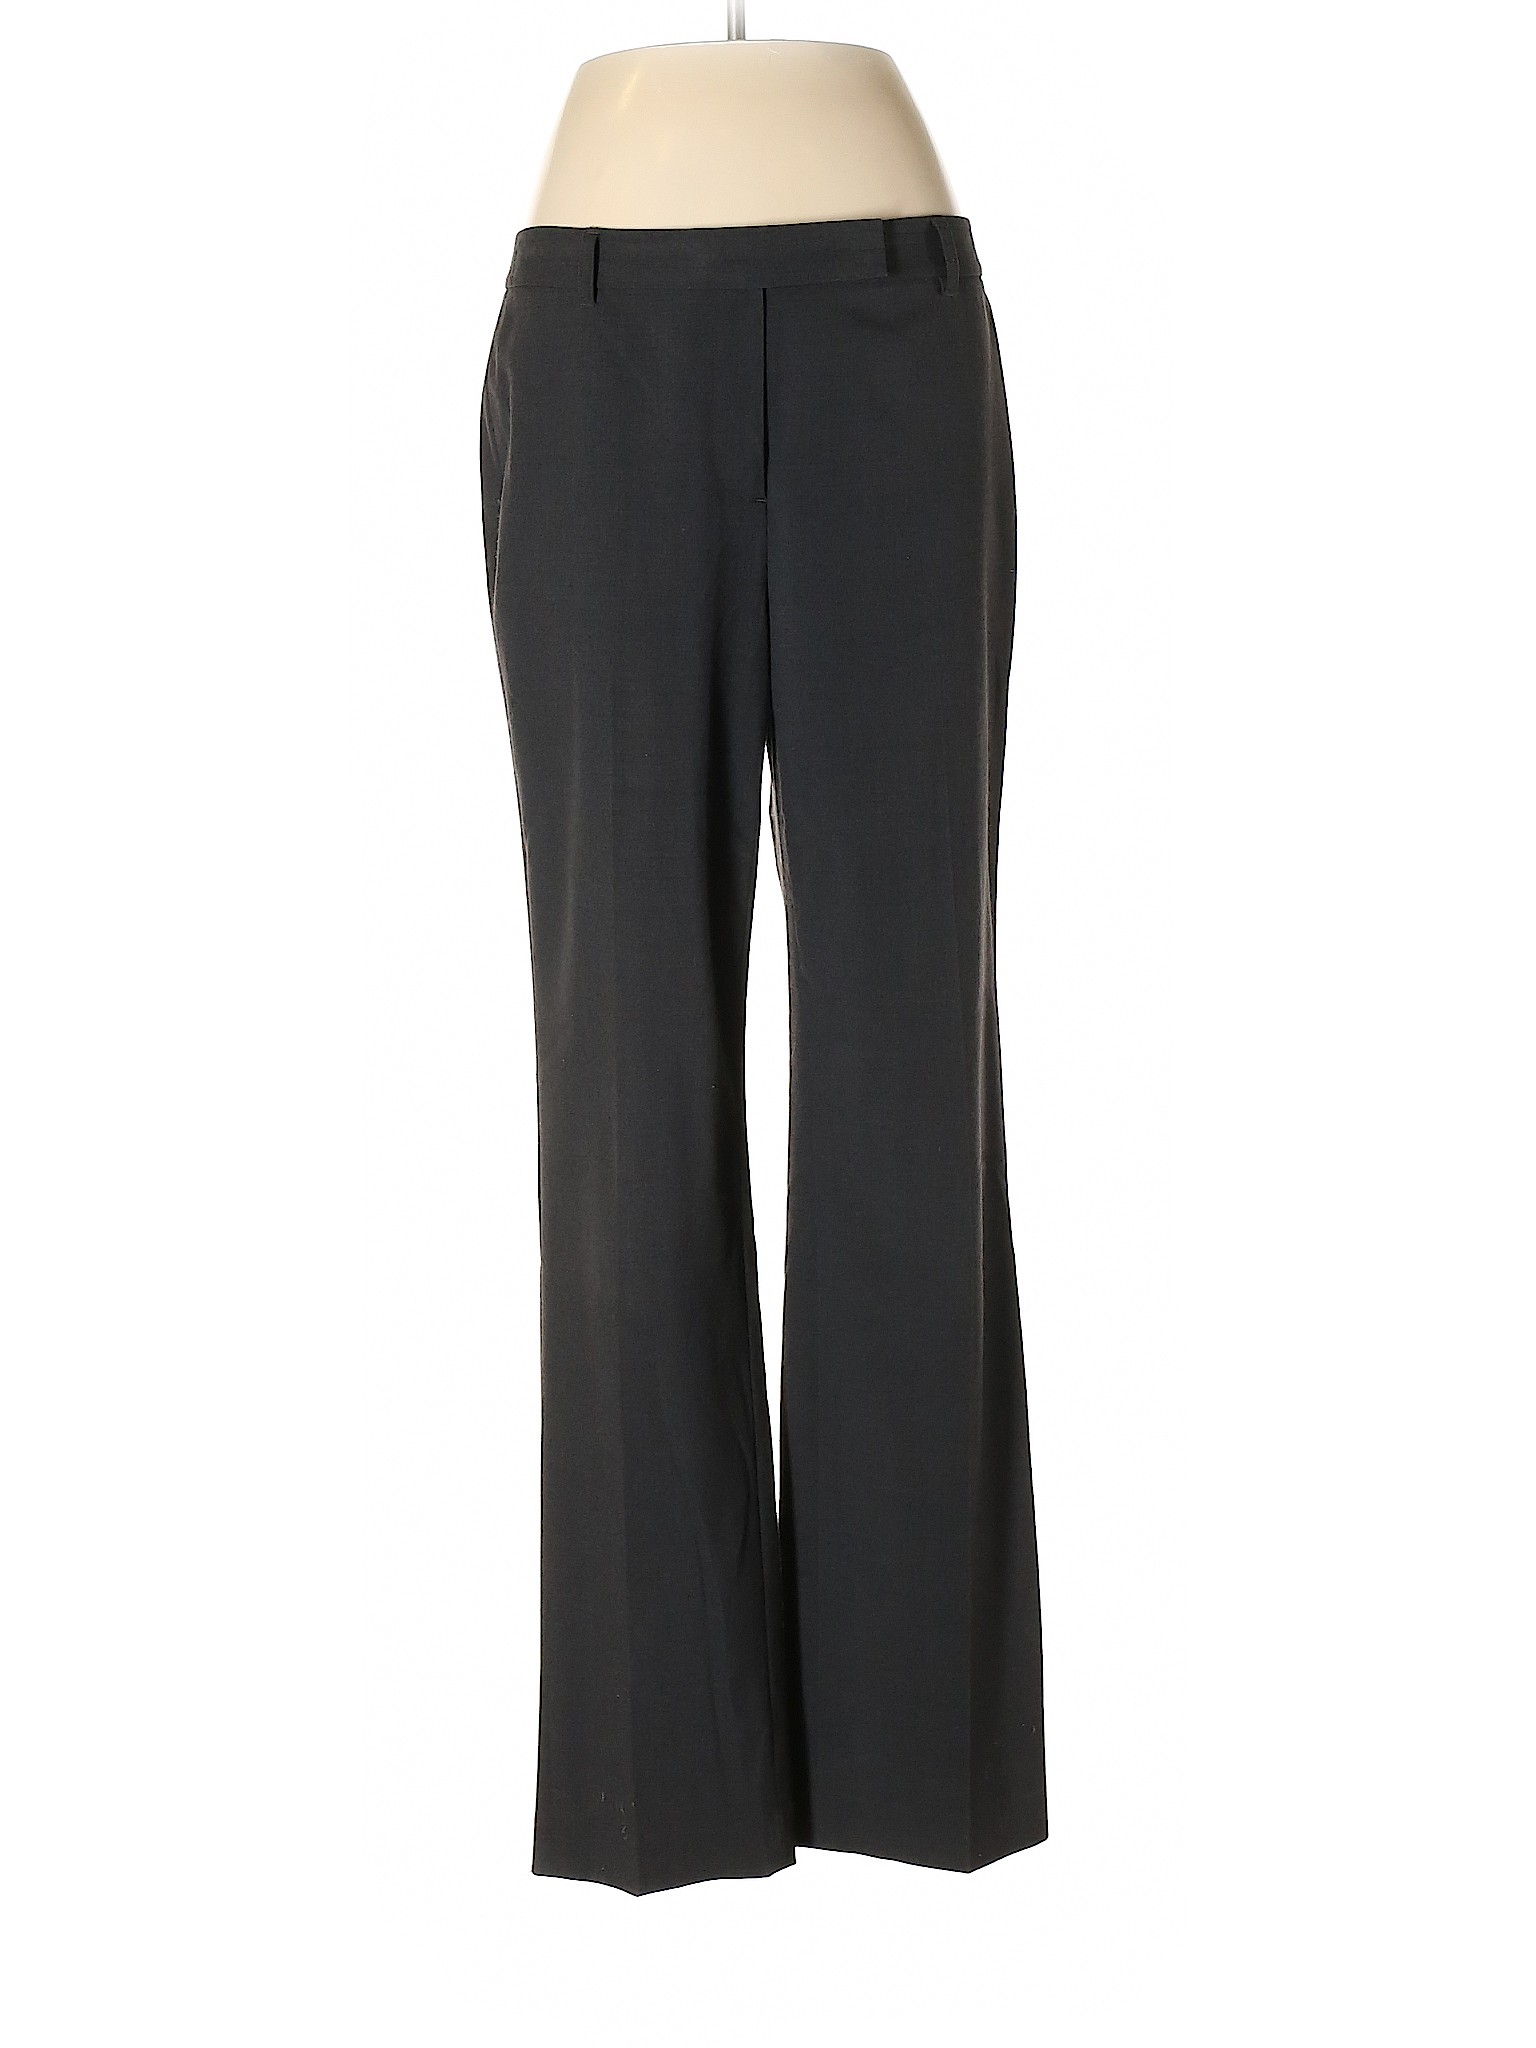 Chaus Women Black Dress Pants 6 | eBay